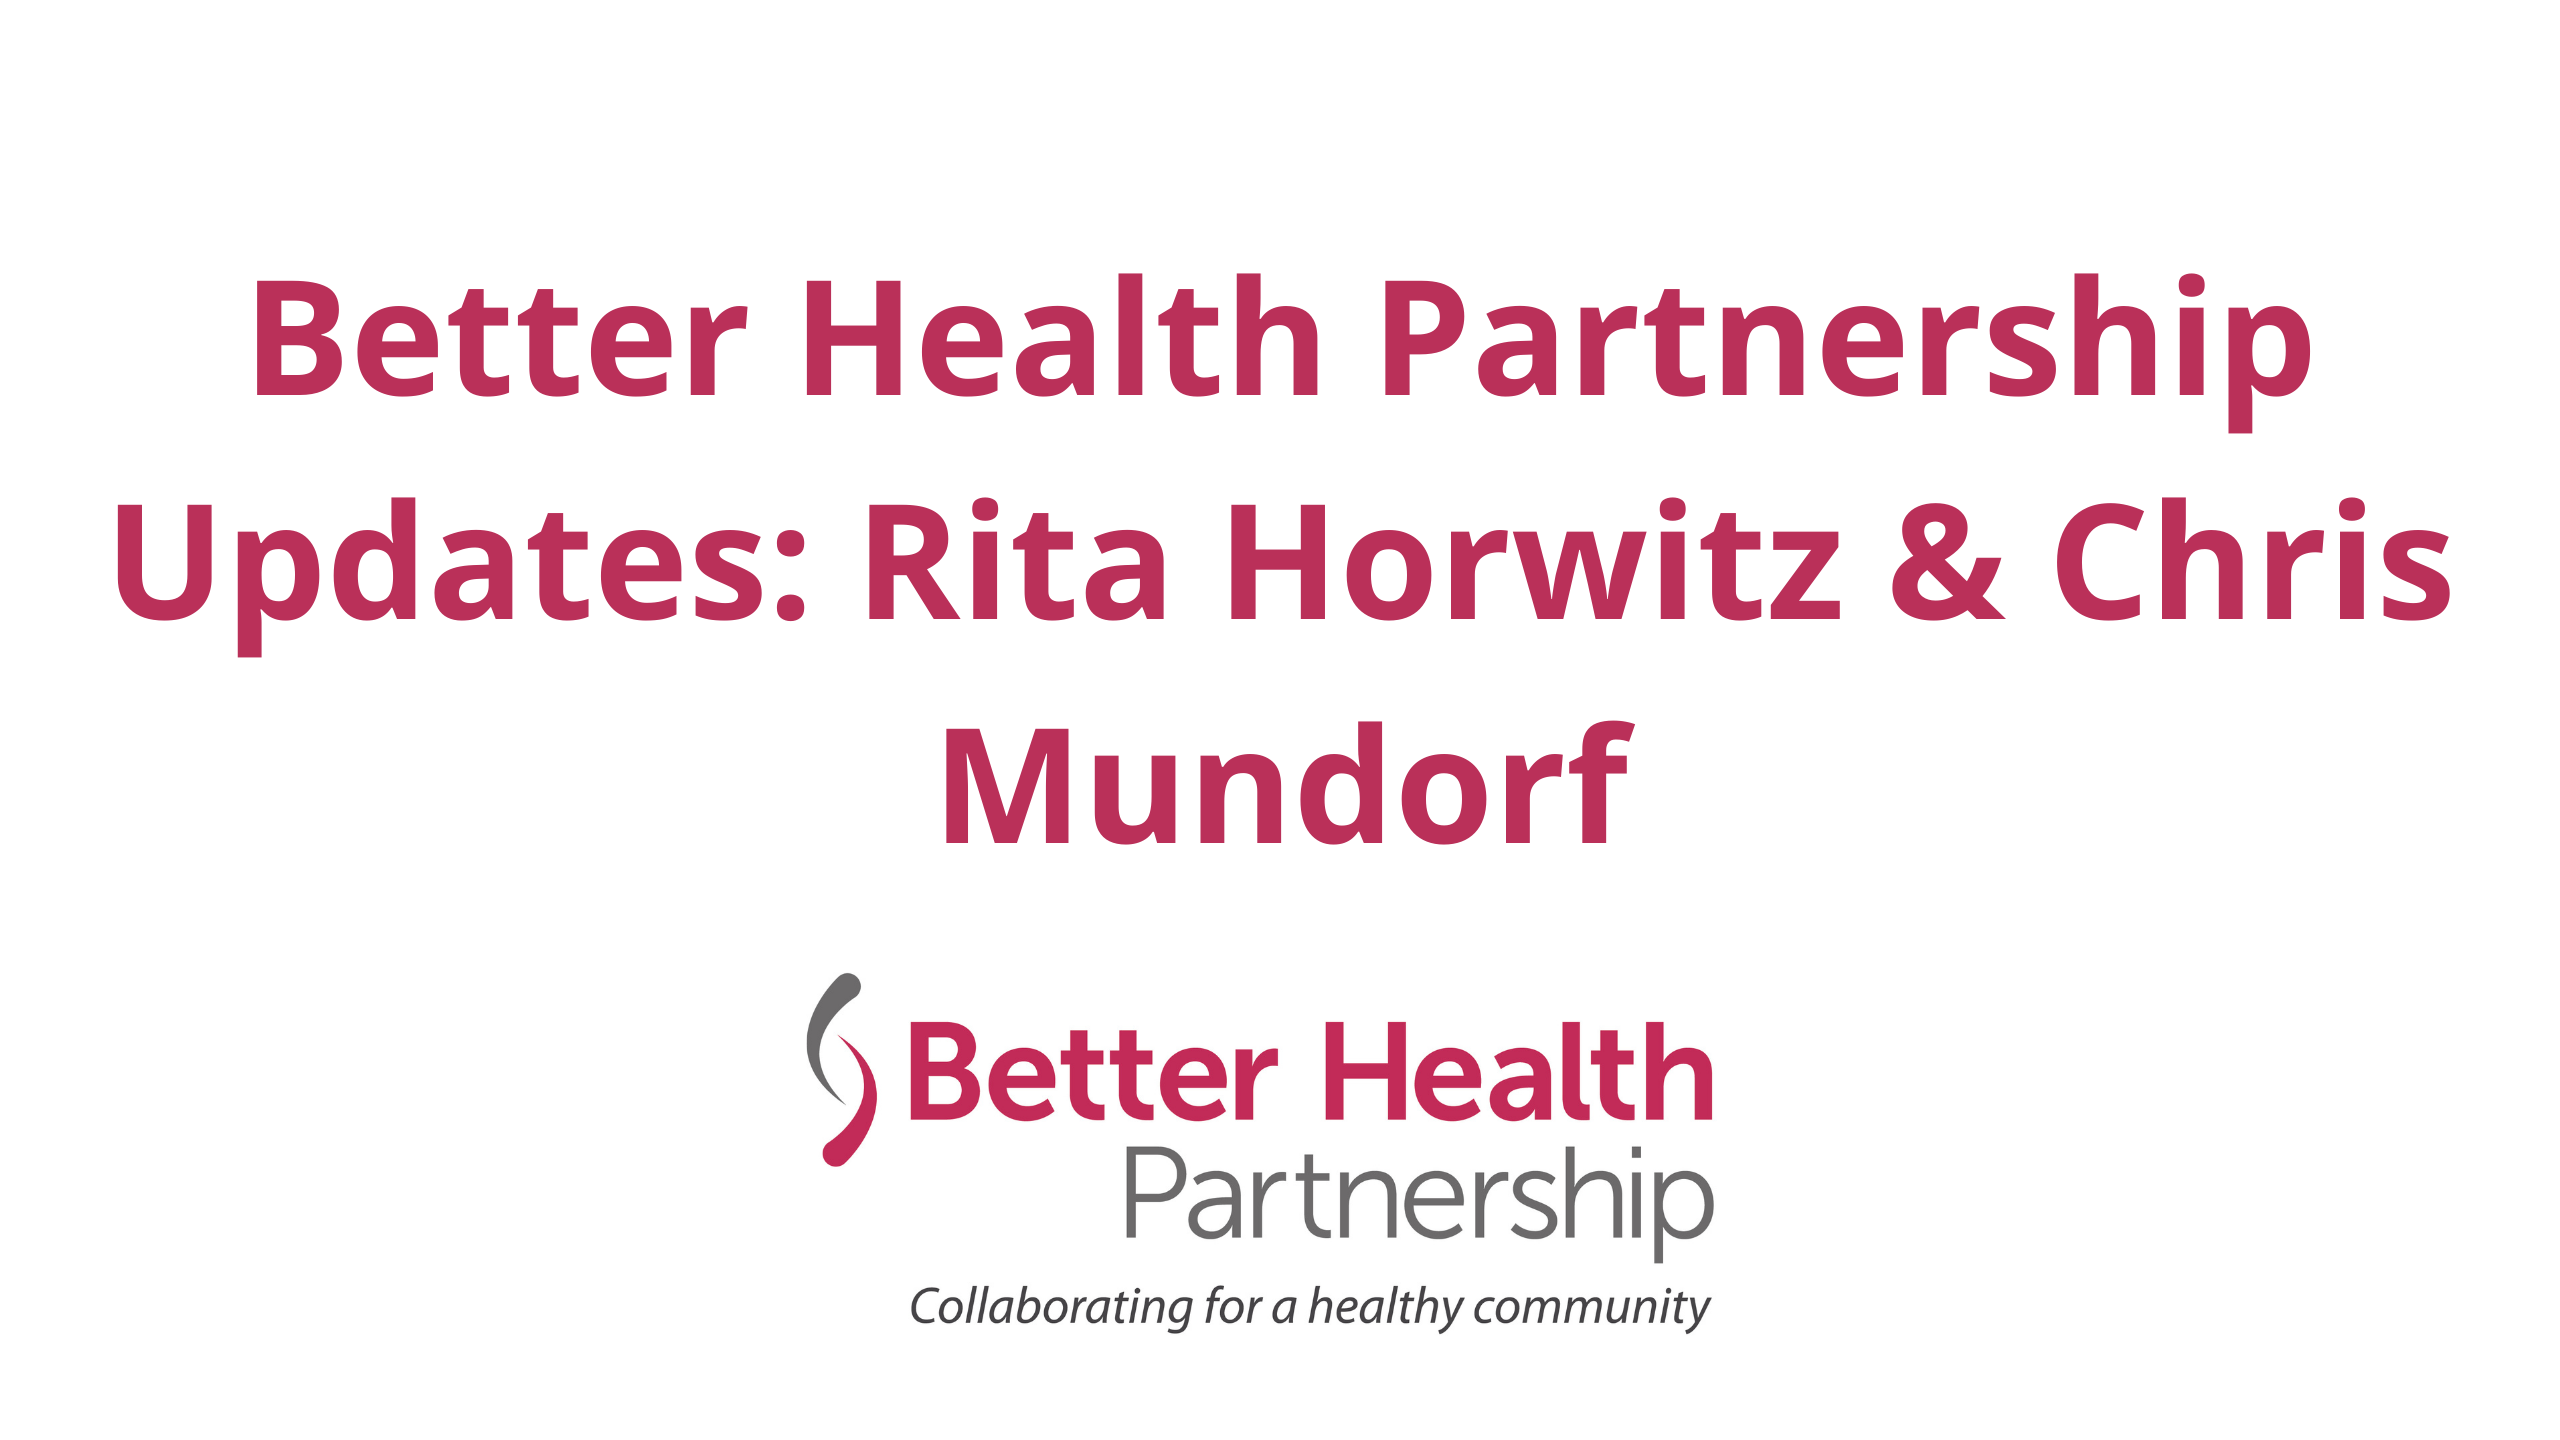 Better Health Partnership Updates: Rita Horwitz & Chris Mundorf